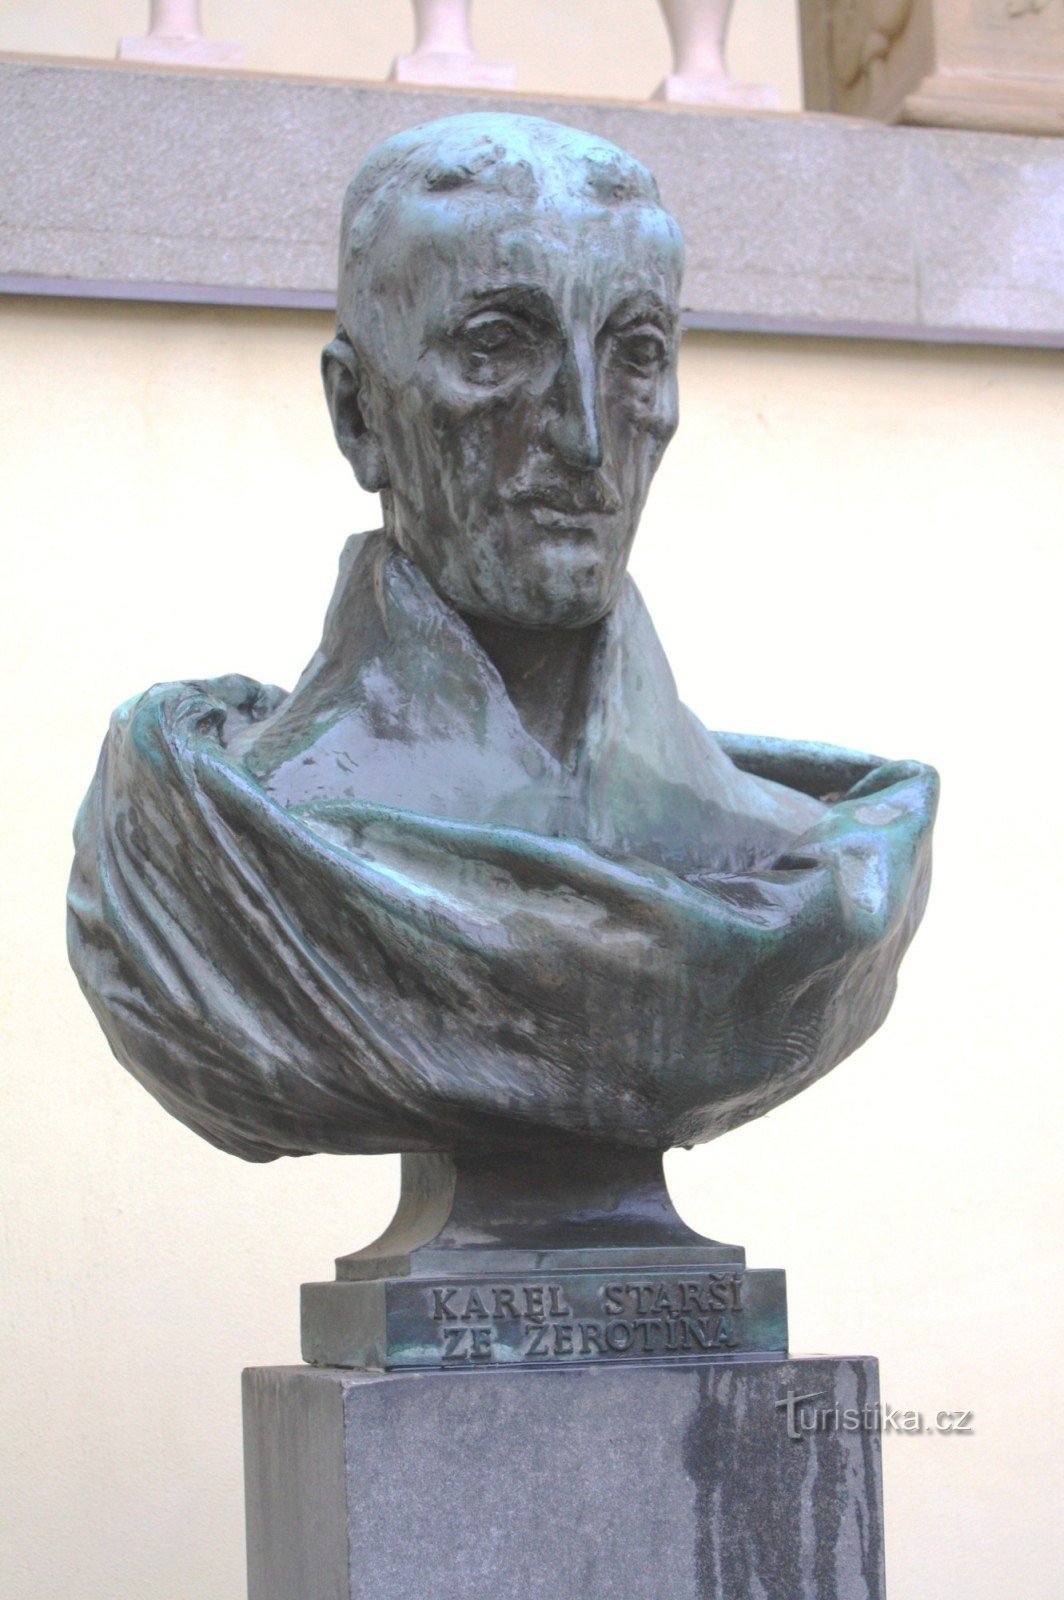 ブルノ - ジェロティンのカレル・スタルシの胸像